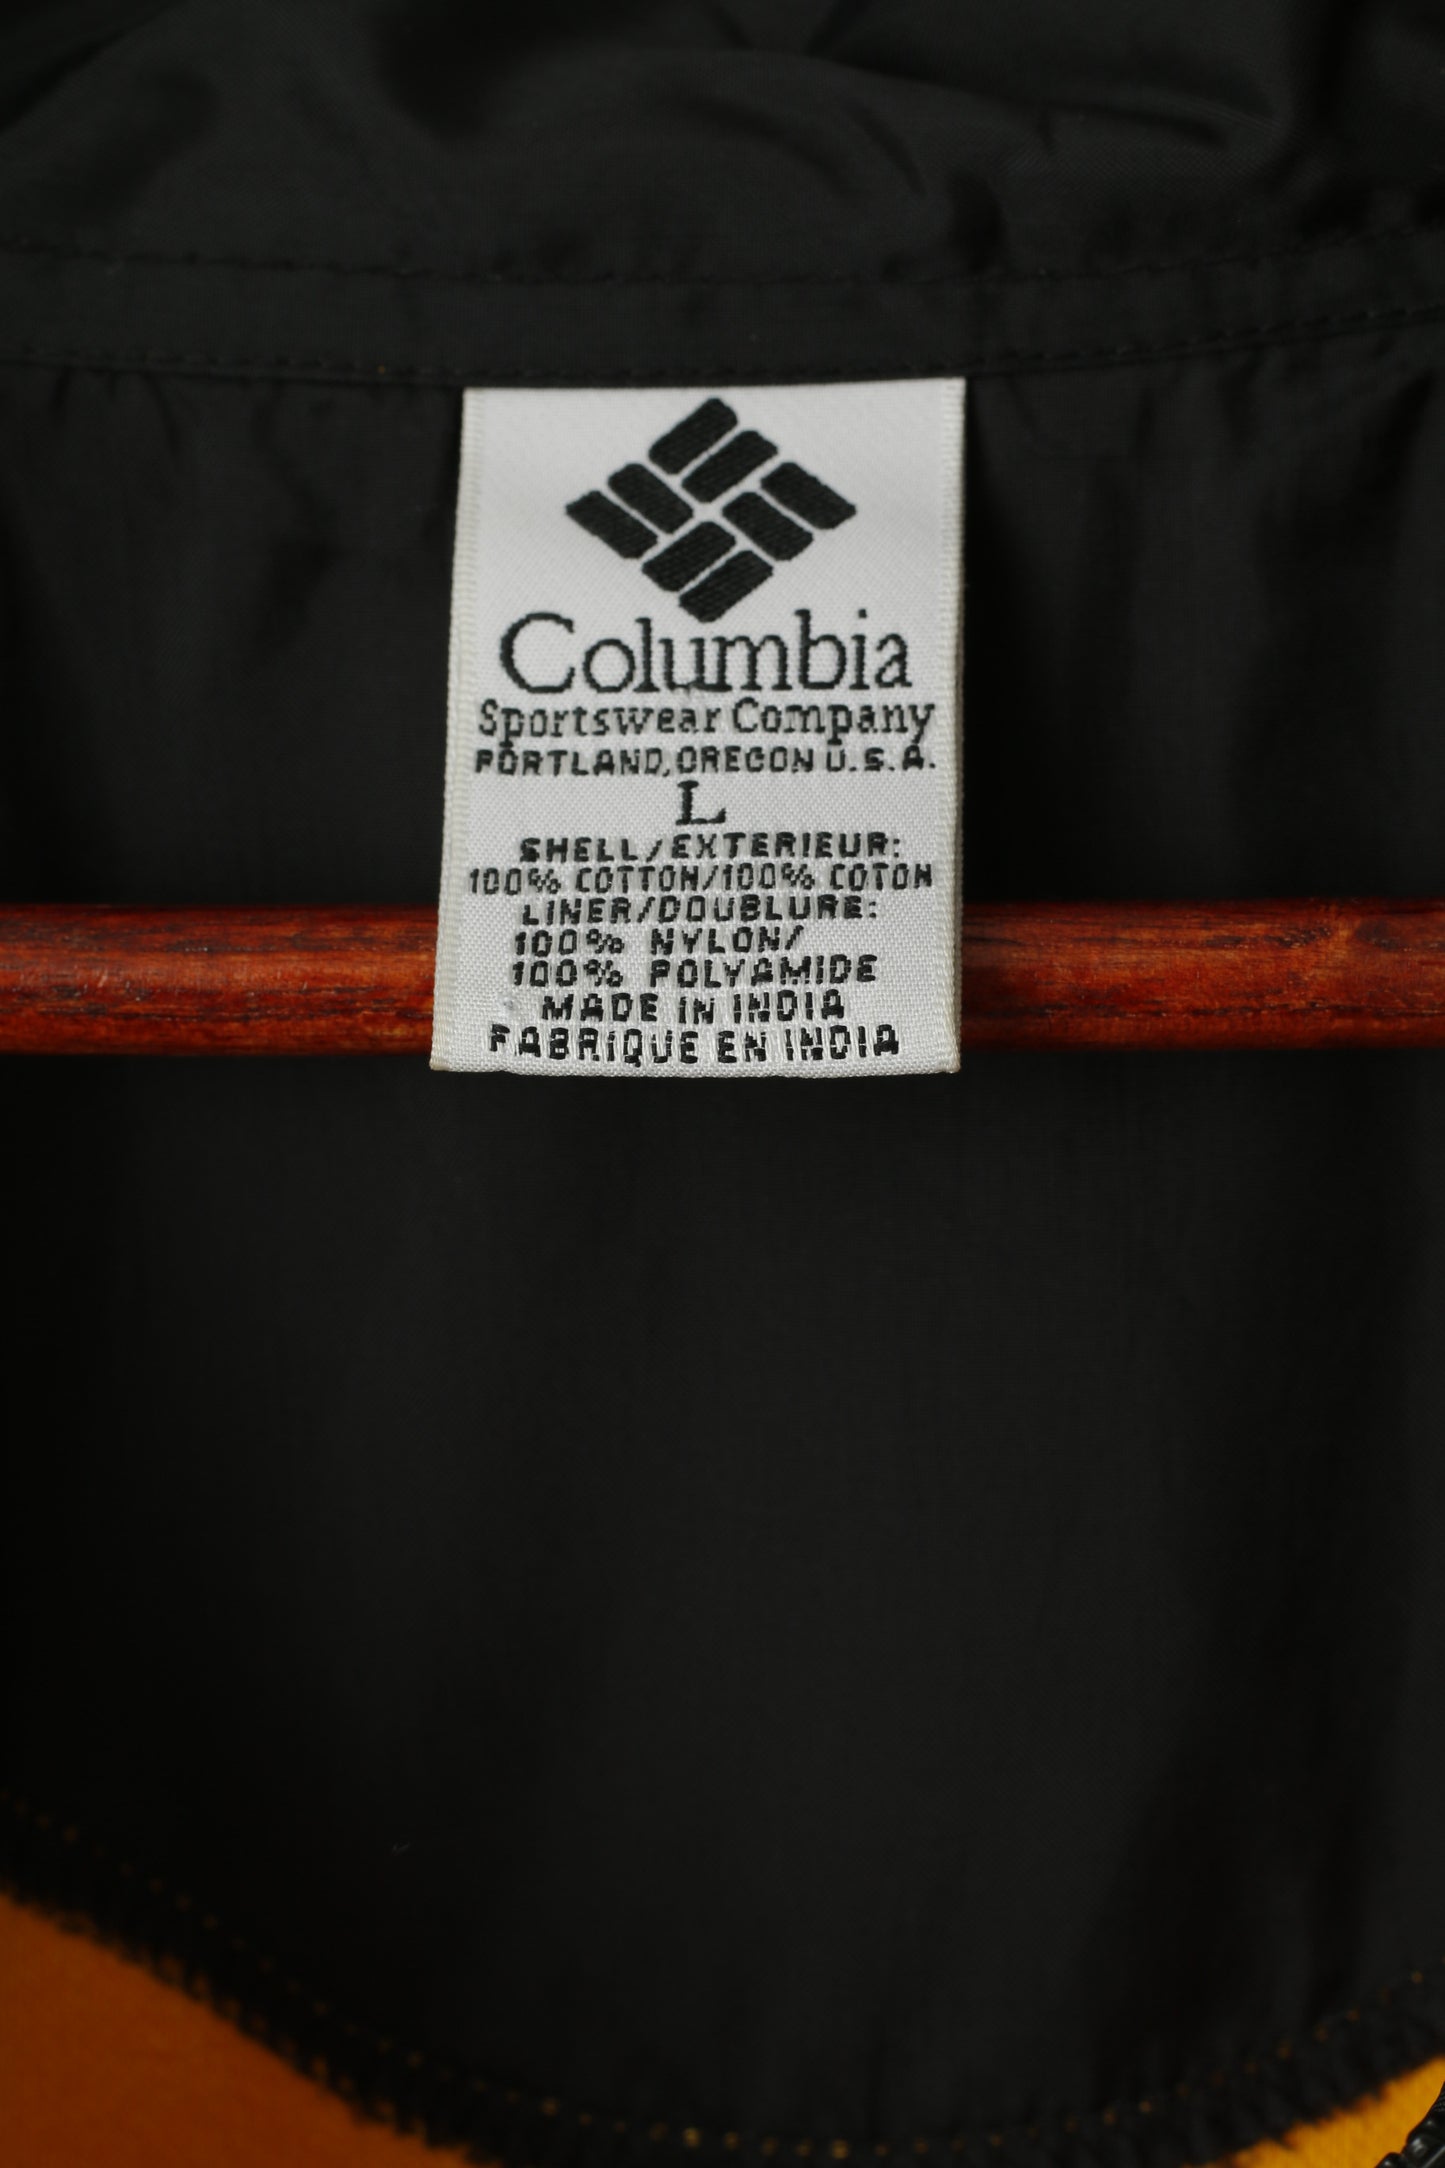 Columbia Sportswear Men L Sweatshirt Yellow Cotton Zip Neck Vintage 90s Sport Top